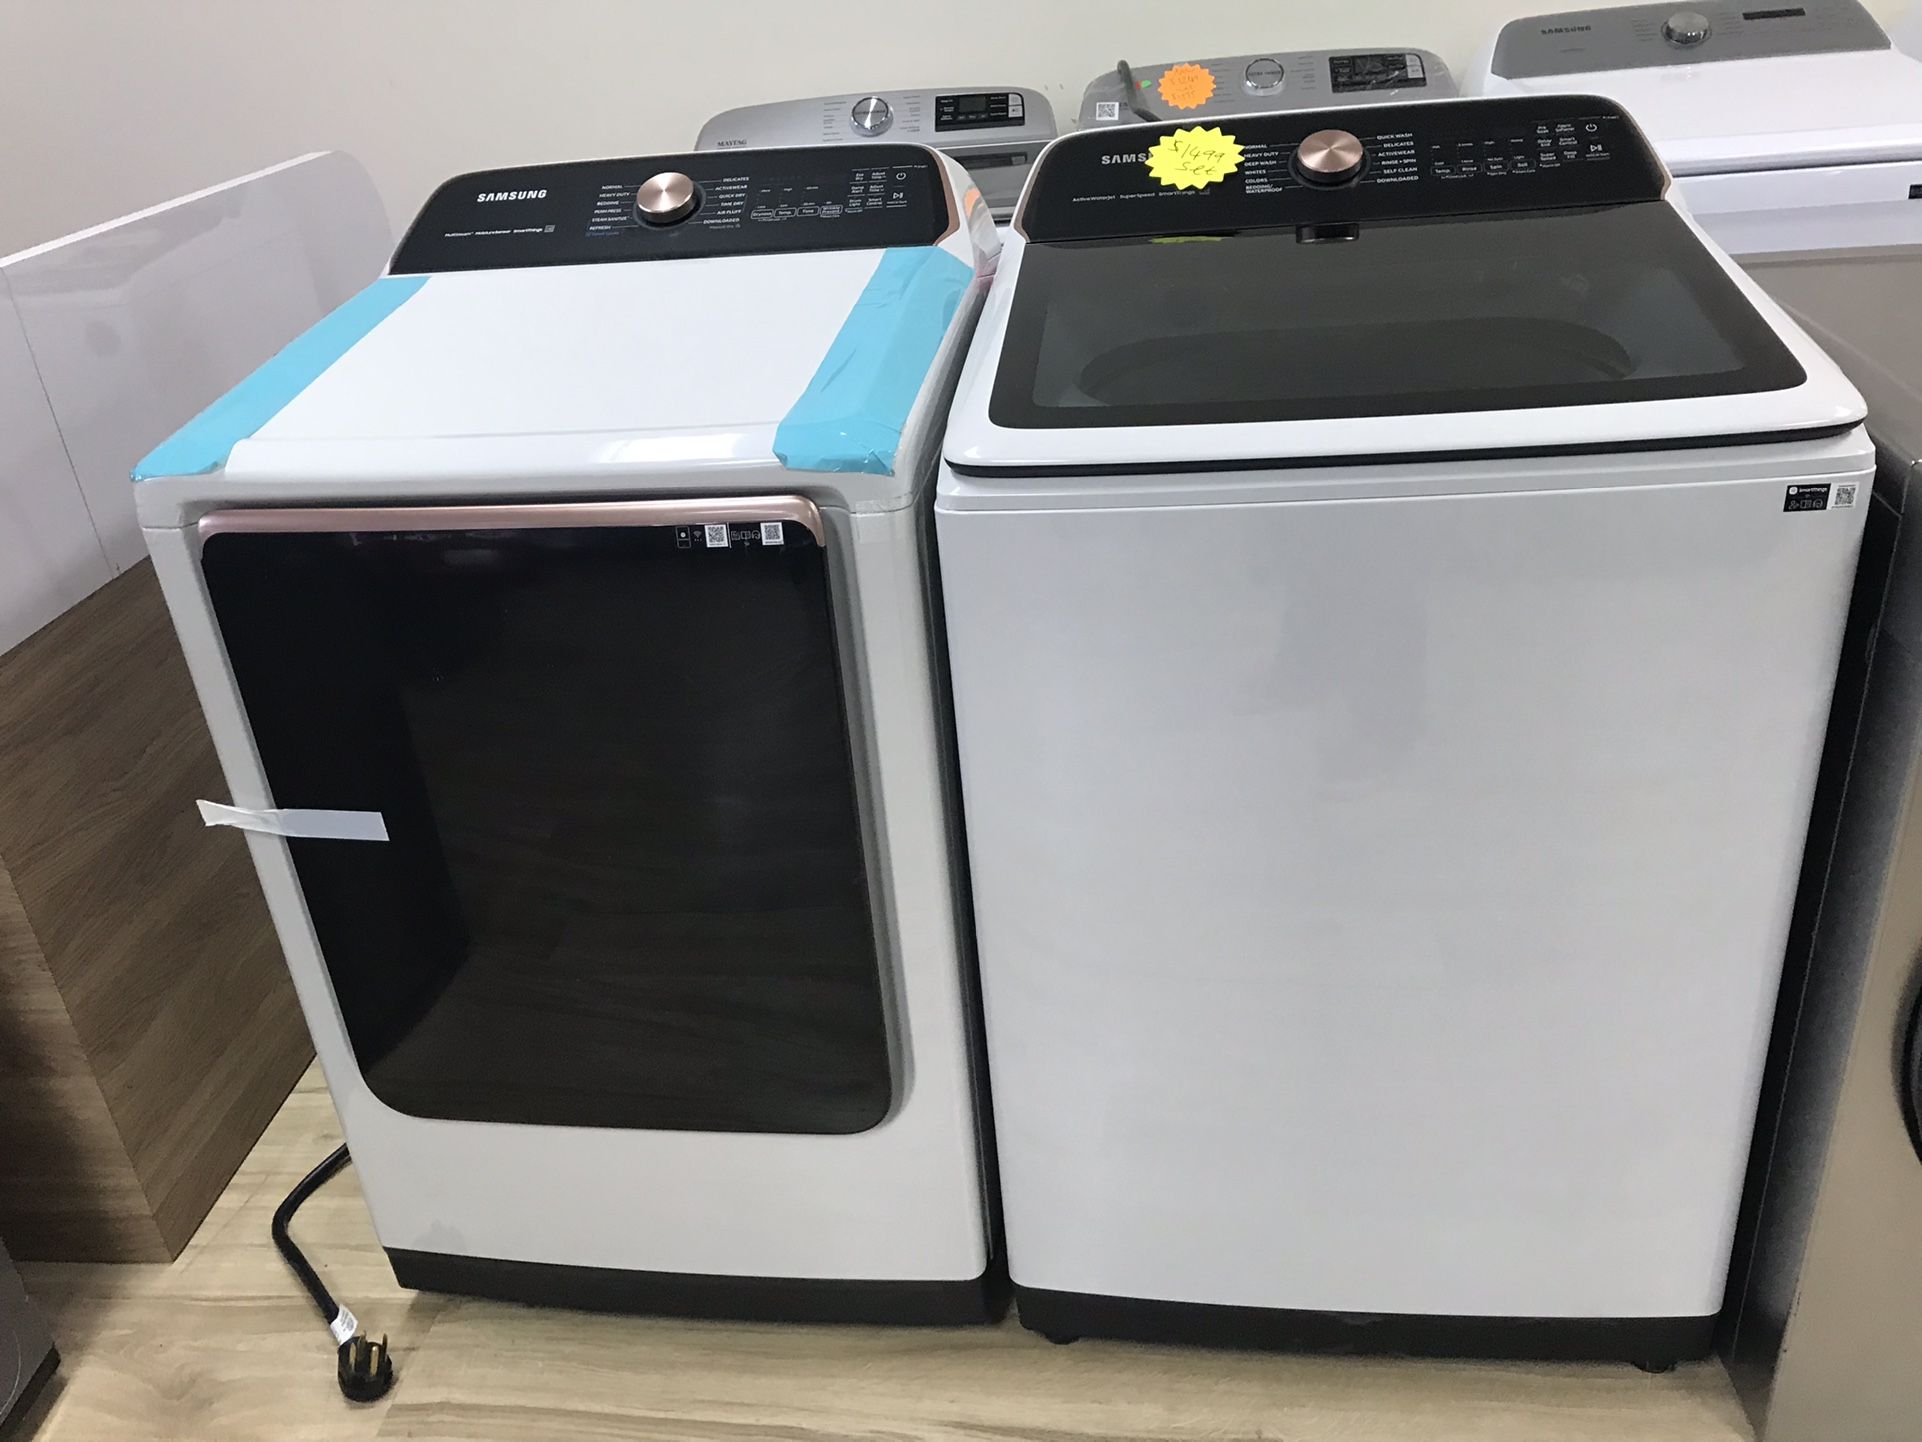 Samsung washer & dryer set in white